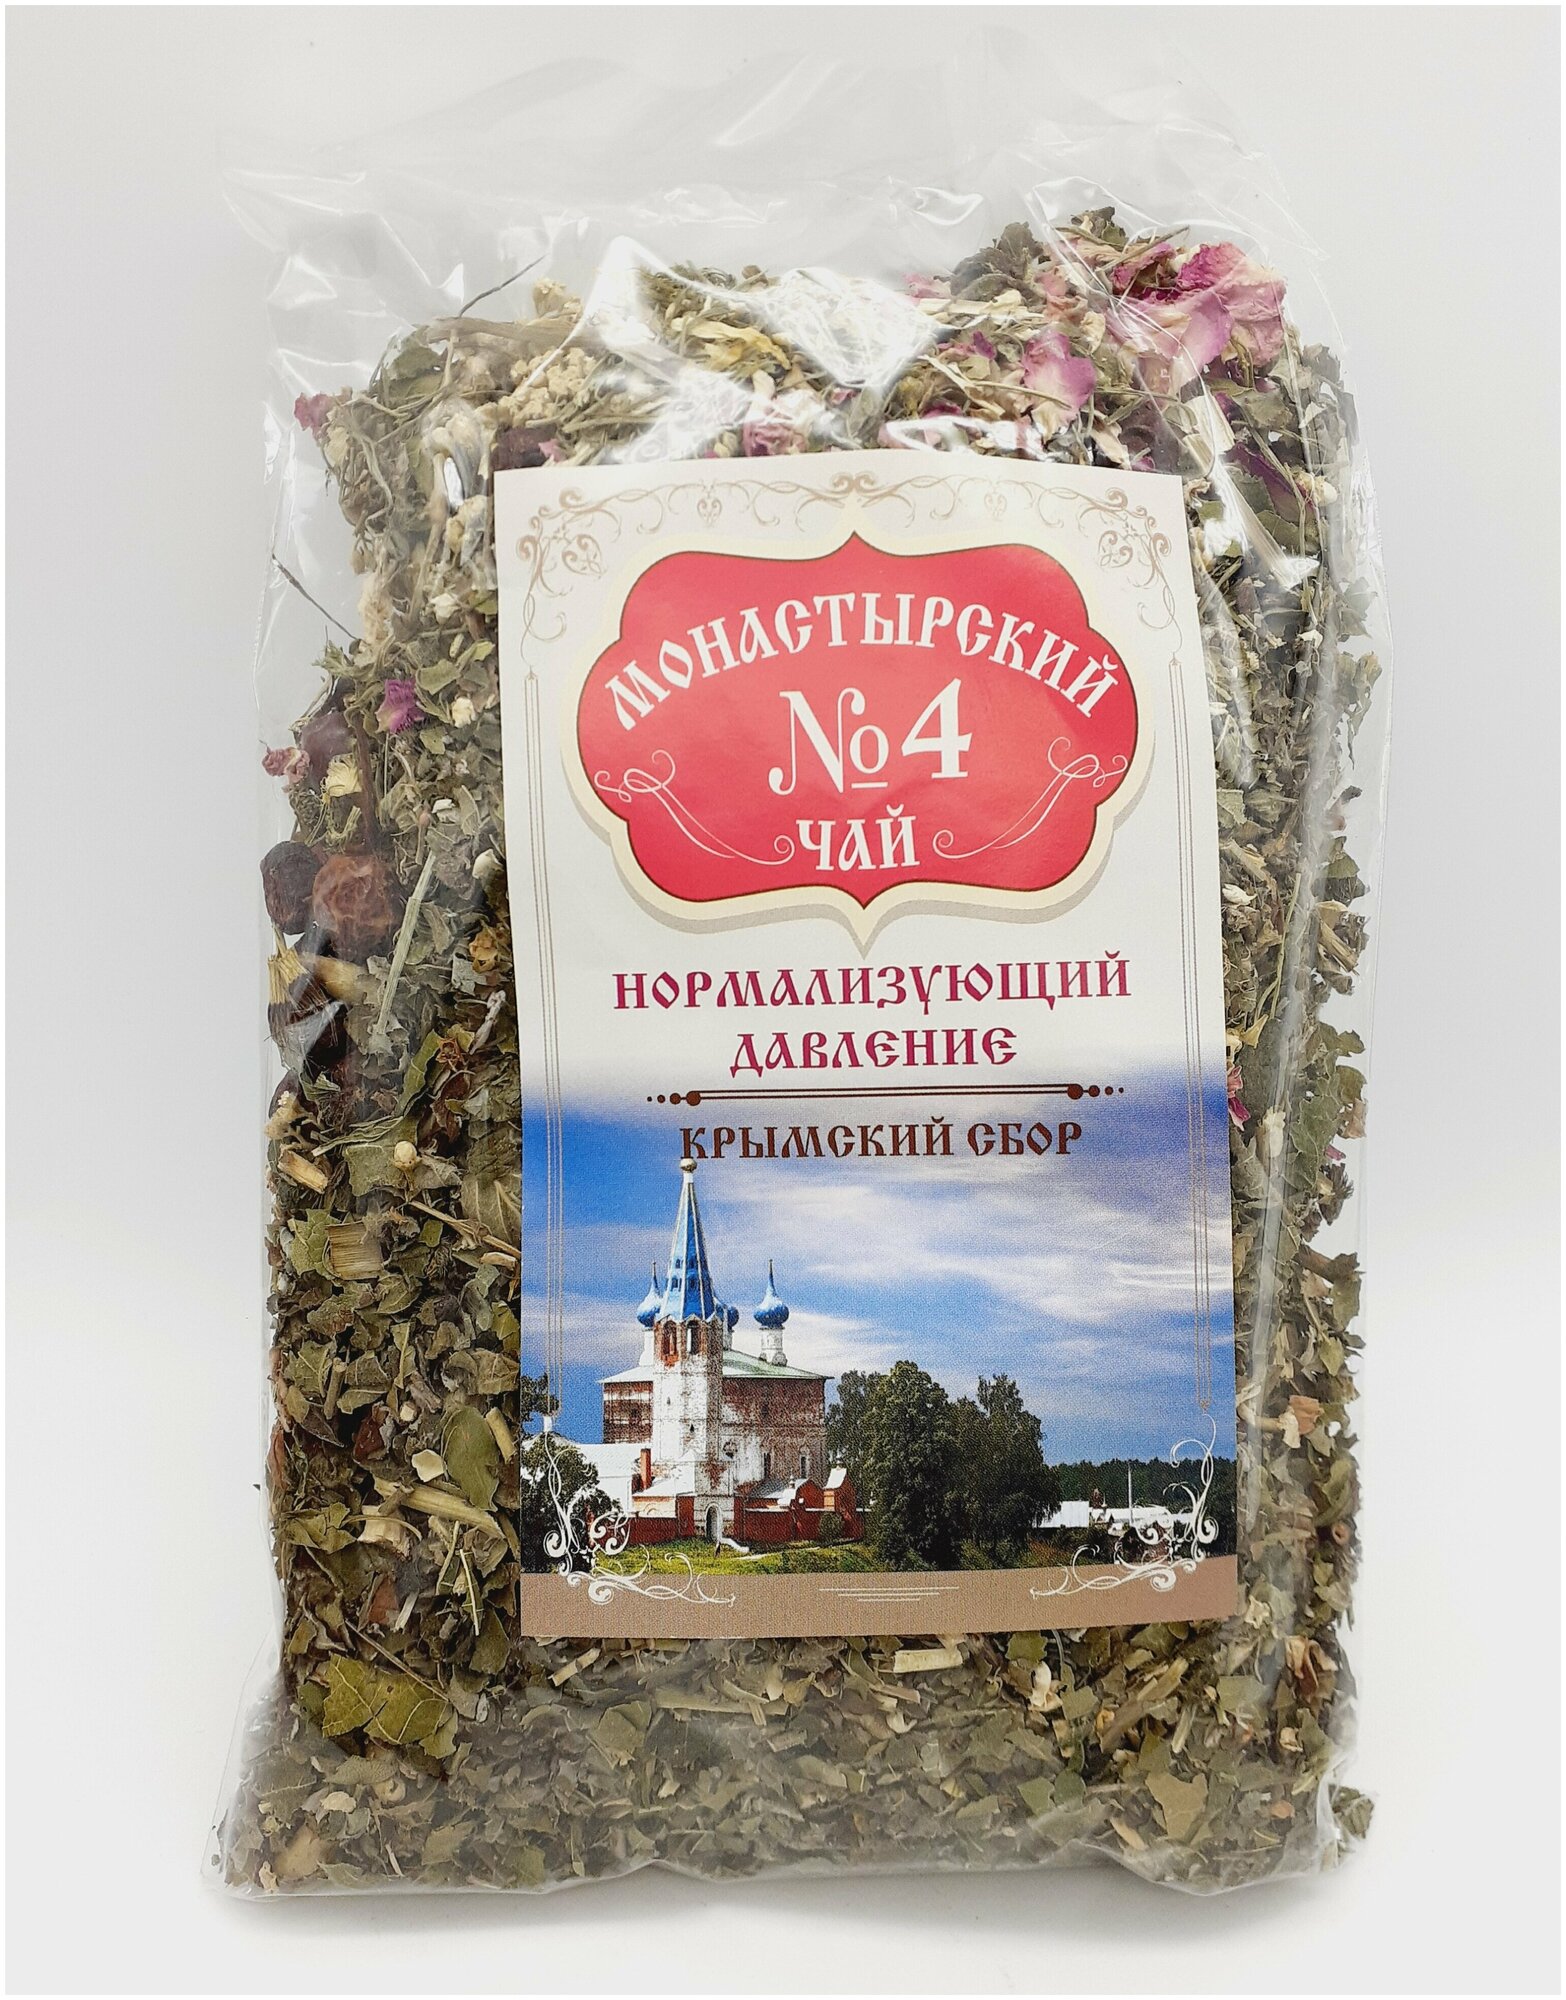 Чай монастырский "Нормализующий давление" №4 (Крымский сбор), 100 г